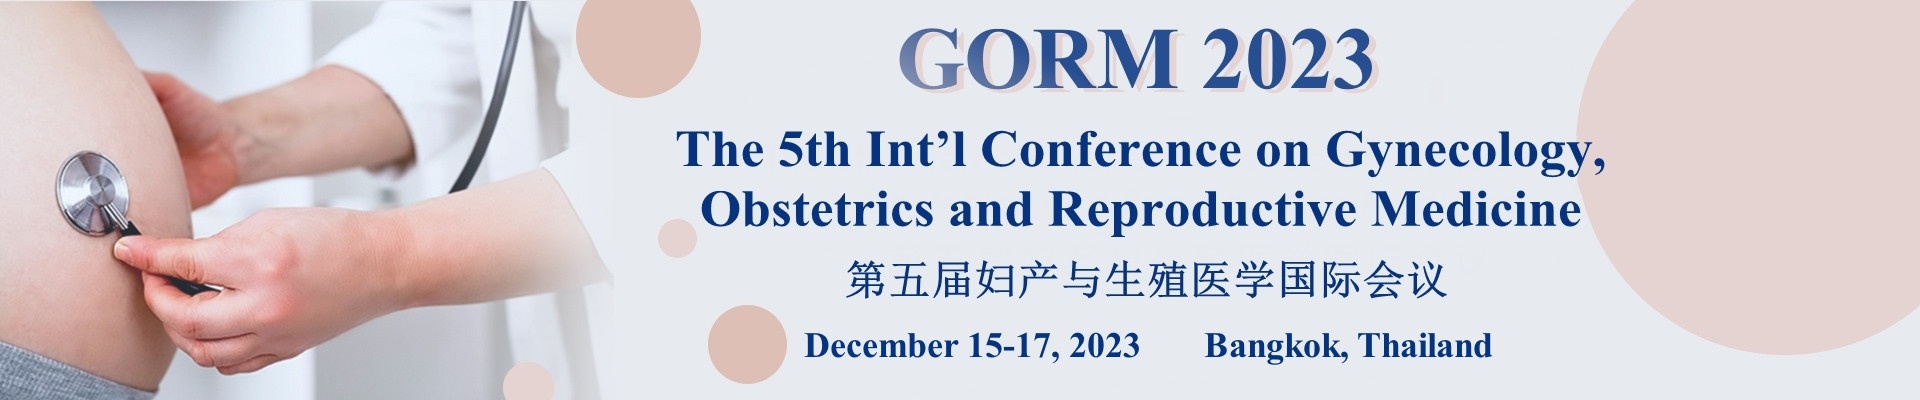 第五屆婦產與生殖醫學國際會議(GORM 2023)